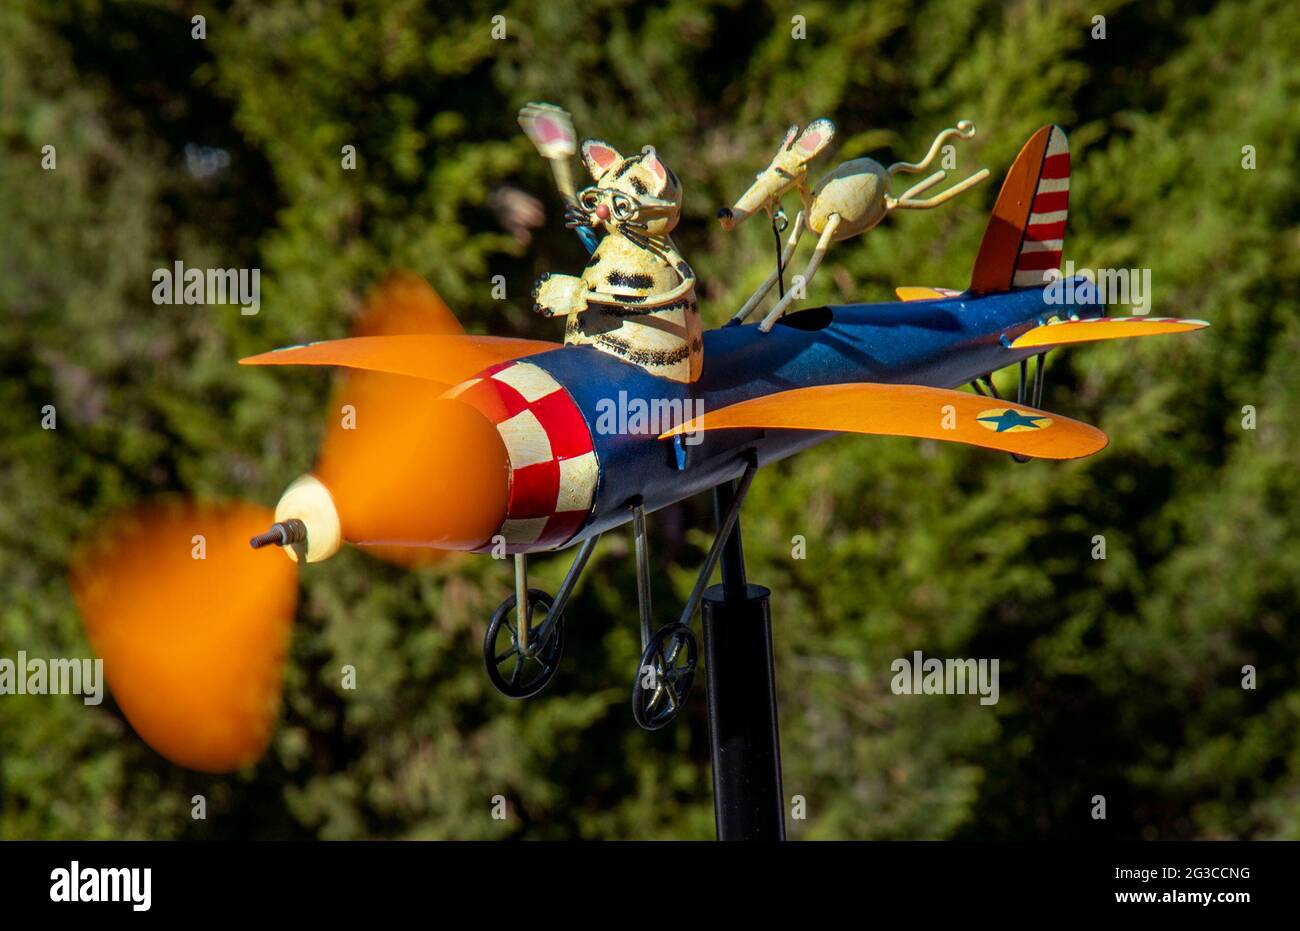 L'elica di un velivolo modello con un gatto pilota e mouse passeggero gira nella brezza in un giardino Laguna Beach, CA. Foto Stock